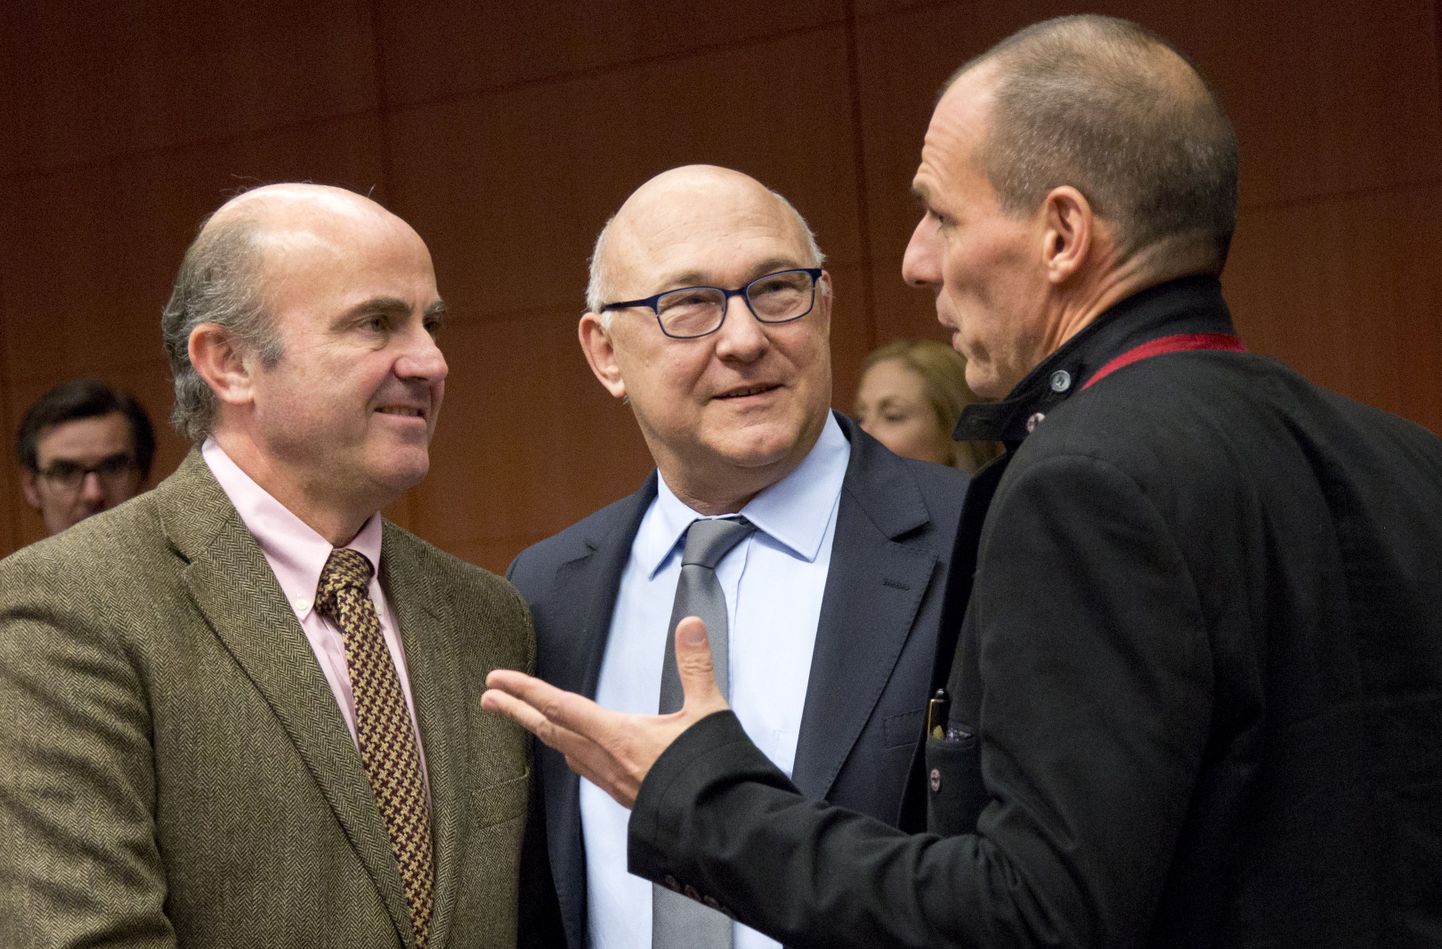 Kreeka rahandusminister Yanis Varoufakis (paremal) Hispaania ja Prantsuse kolleegide Luis de Guindose (vasakul) ja Michel Sapiniga nõu pidamas.